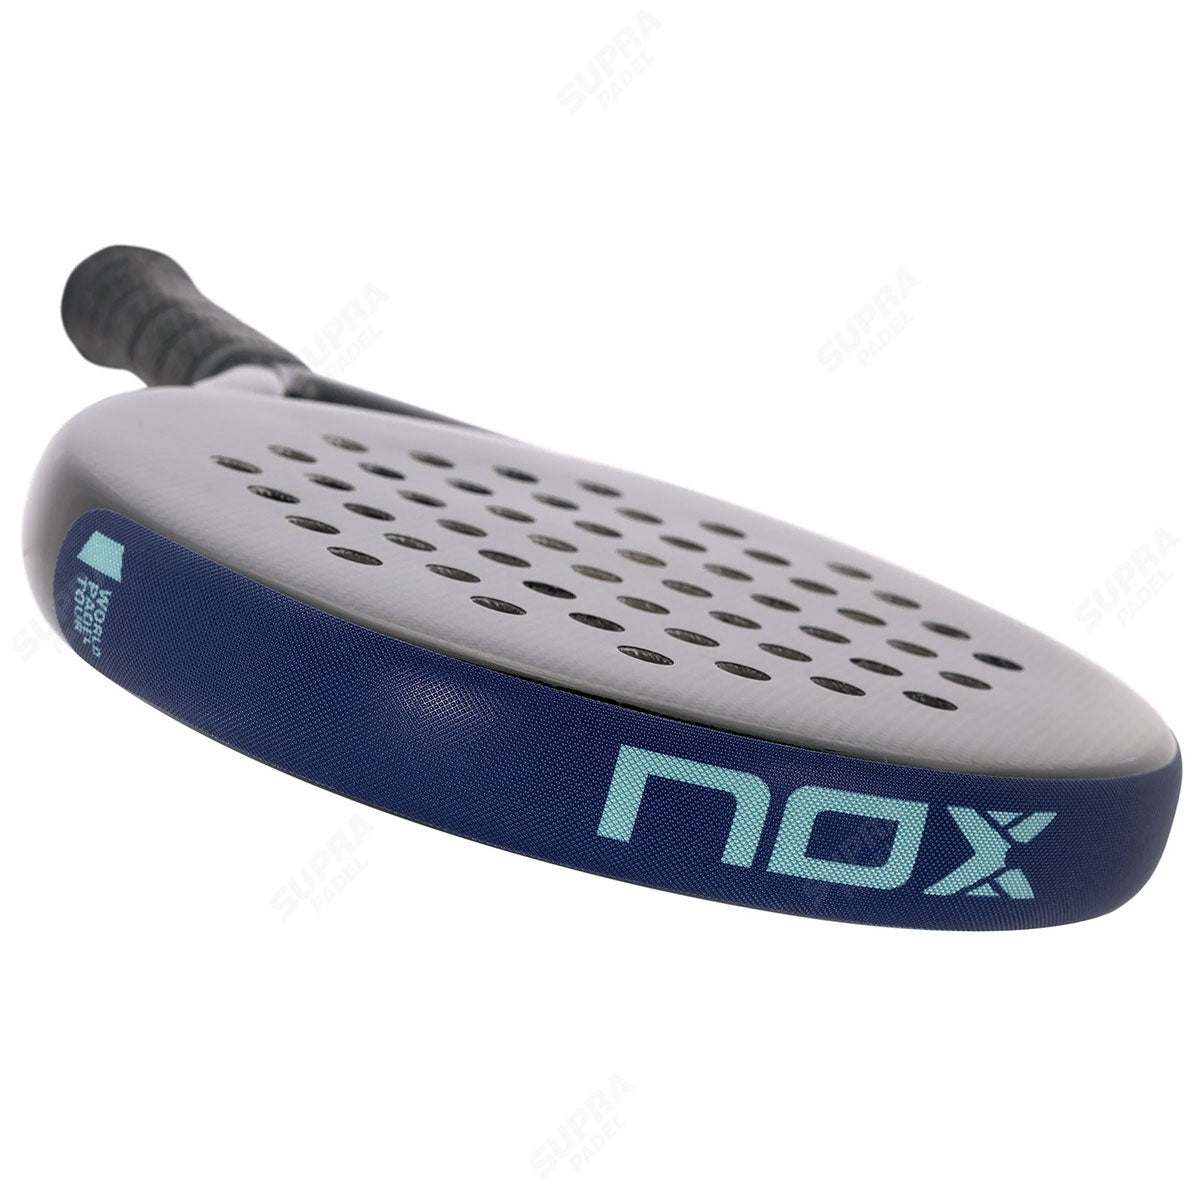 Overgrip padel profesional en blanco (tambor 120 unidades) – NOX